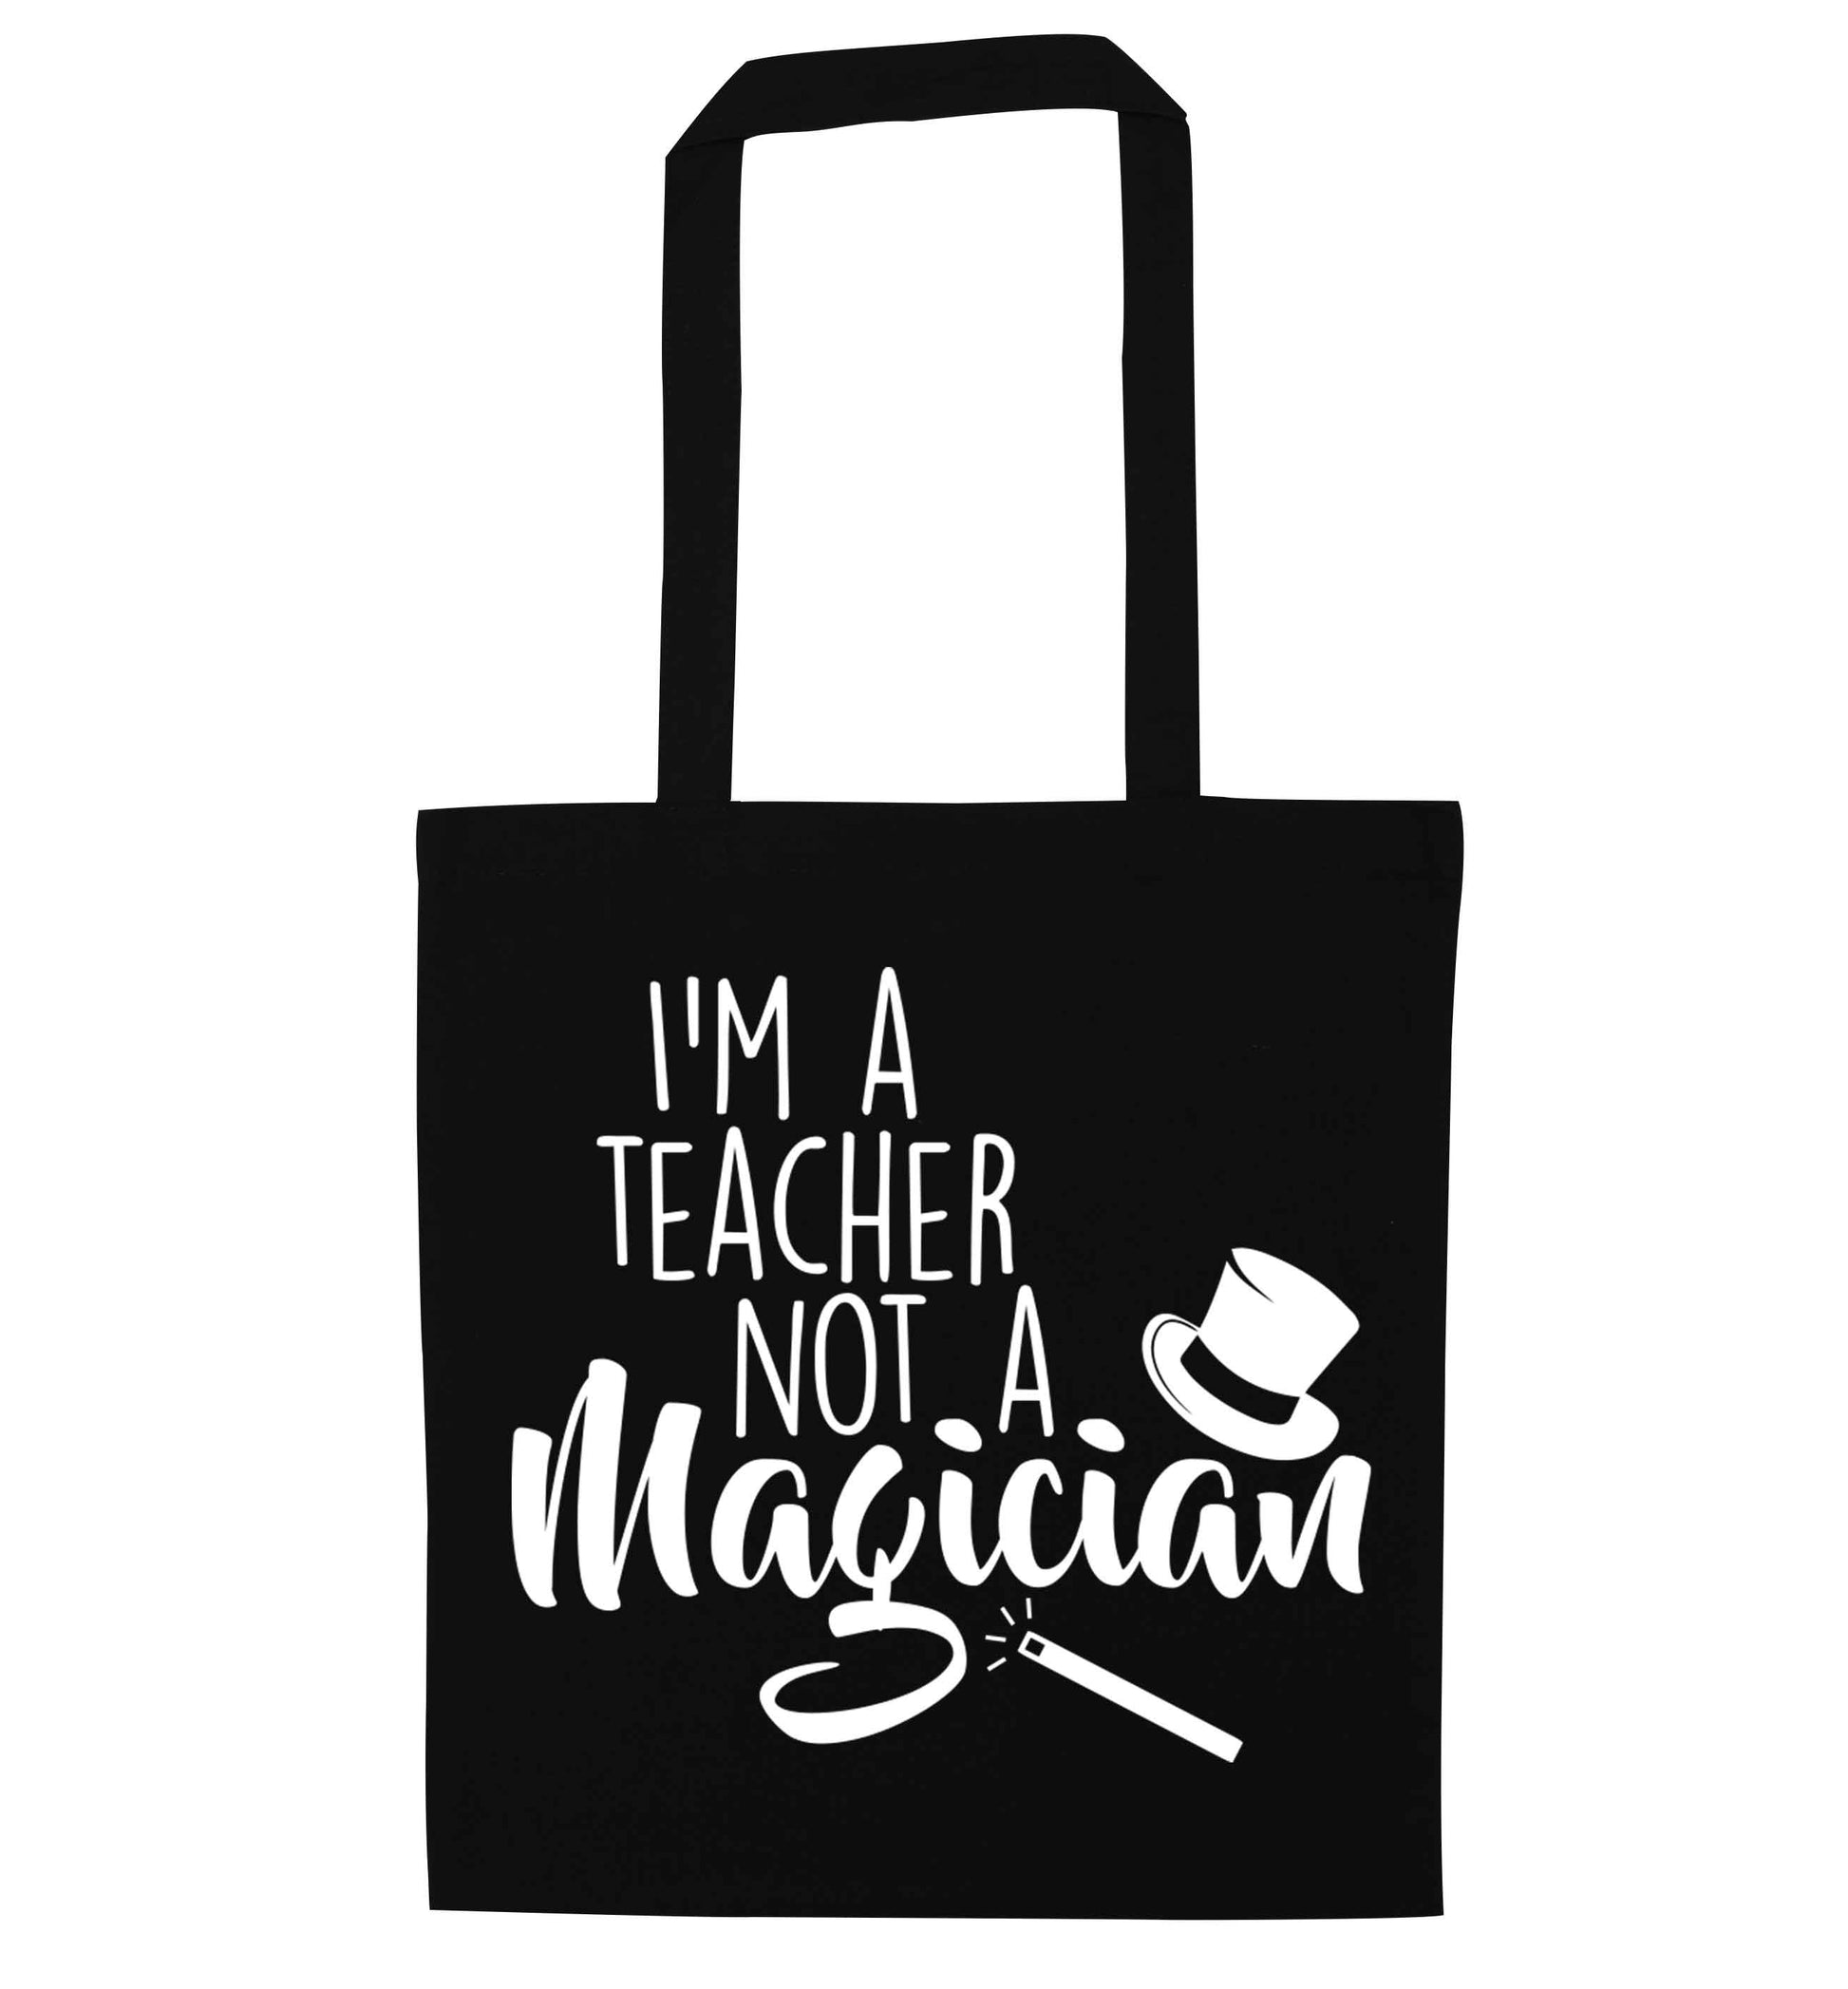 I'm a teacher not a magician black tote bag